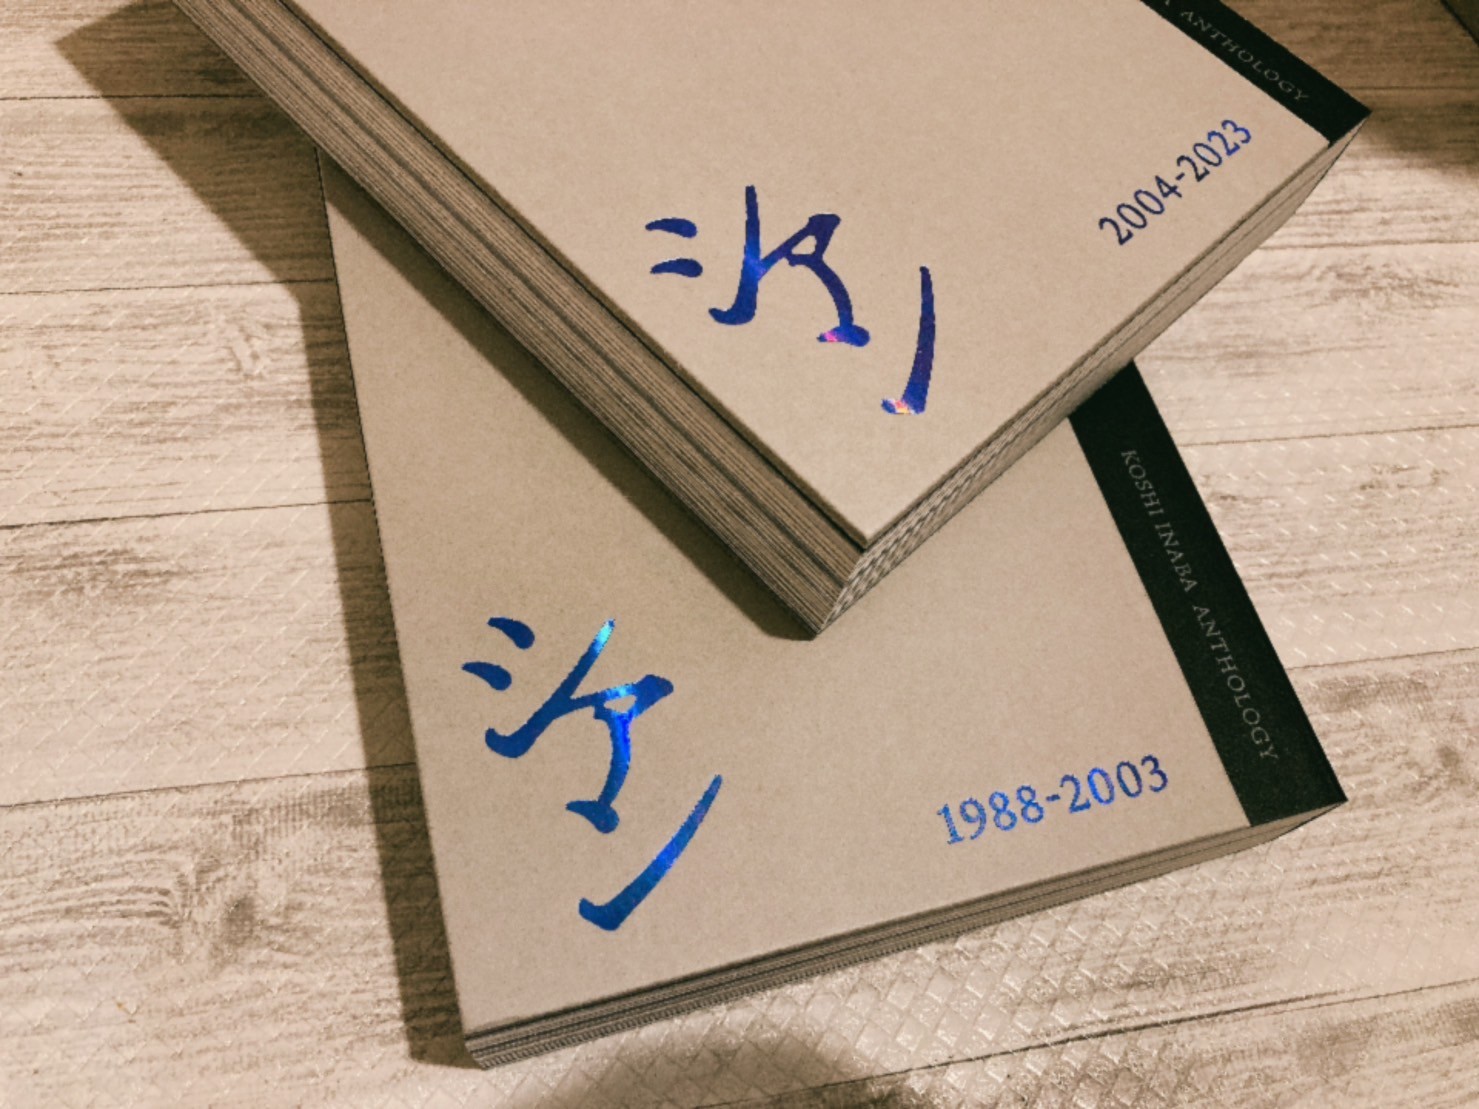 『稲葉浩志作品集「シアン」特装版』（KADOKAWA）の作品集上巻「1988-2003」のイメージ画像